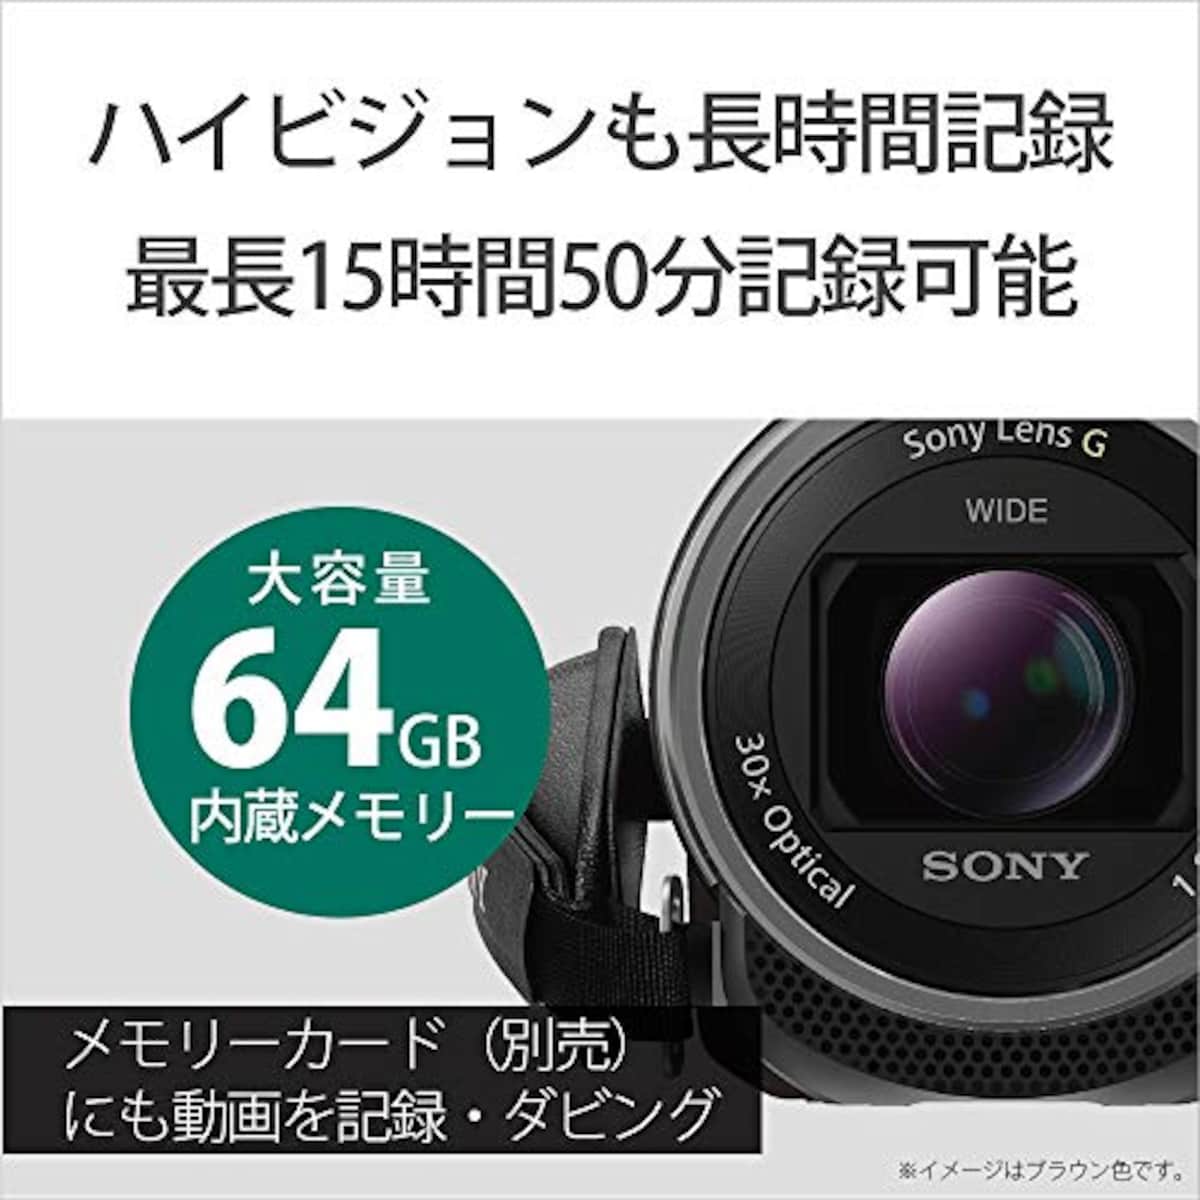  【CX680 と ケース&ストラップ セット】 大切なカメラをキズや汚れからガードしたい方に。HDR-CX680 ホワイト + LCS-MCS2 ライトブラウン画像6 